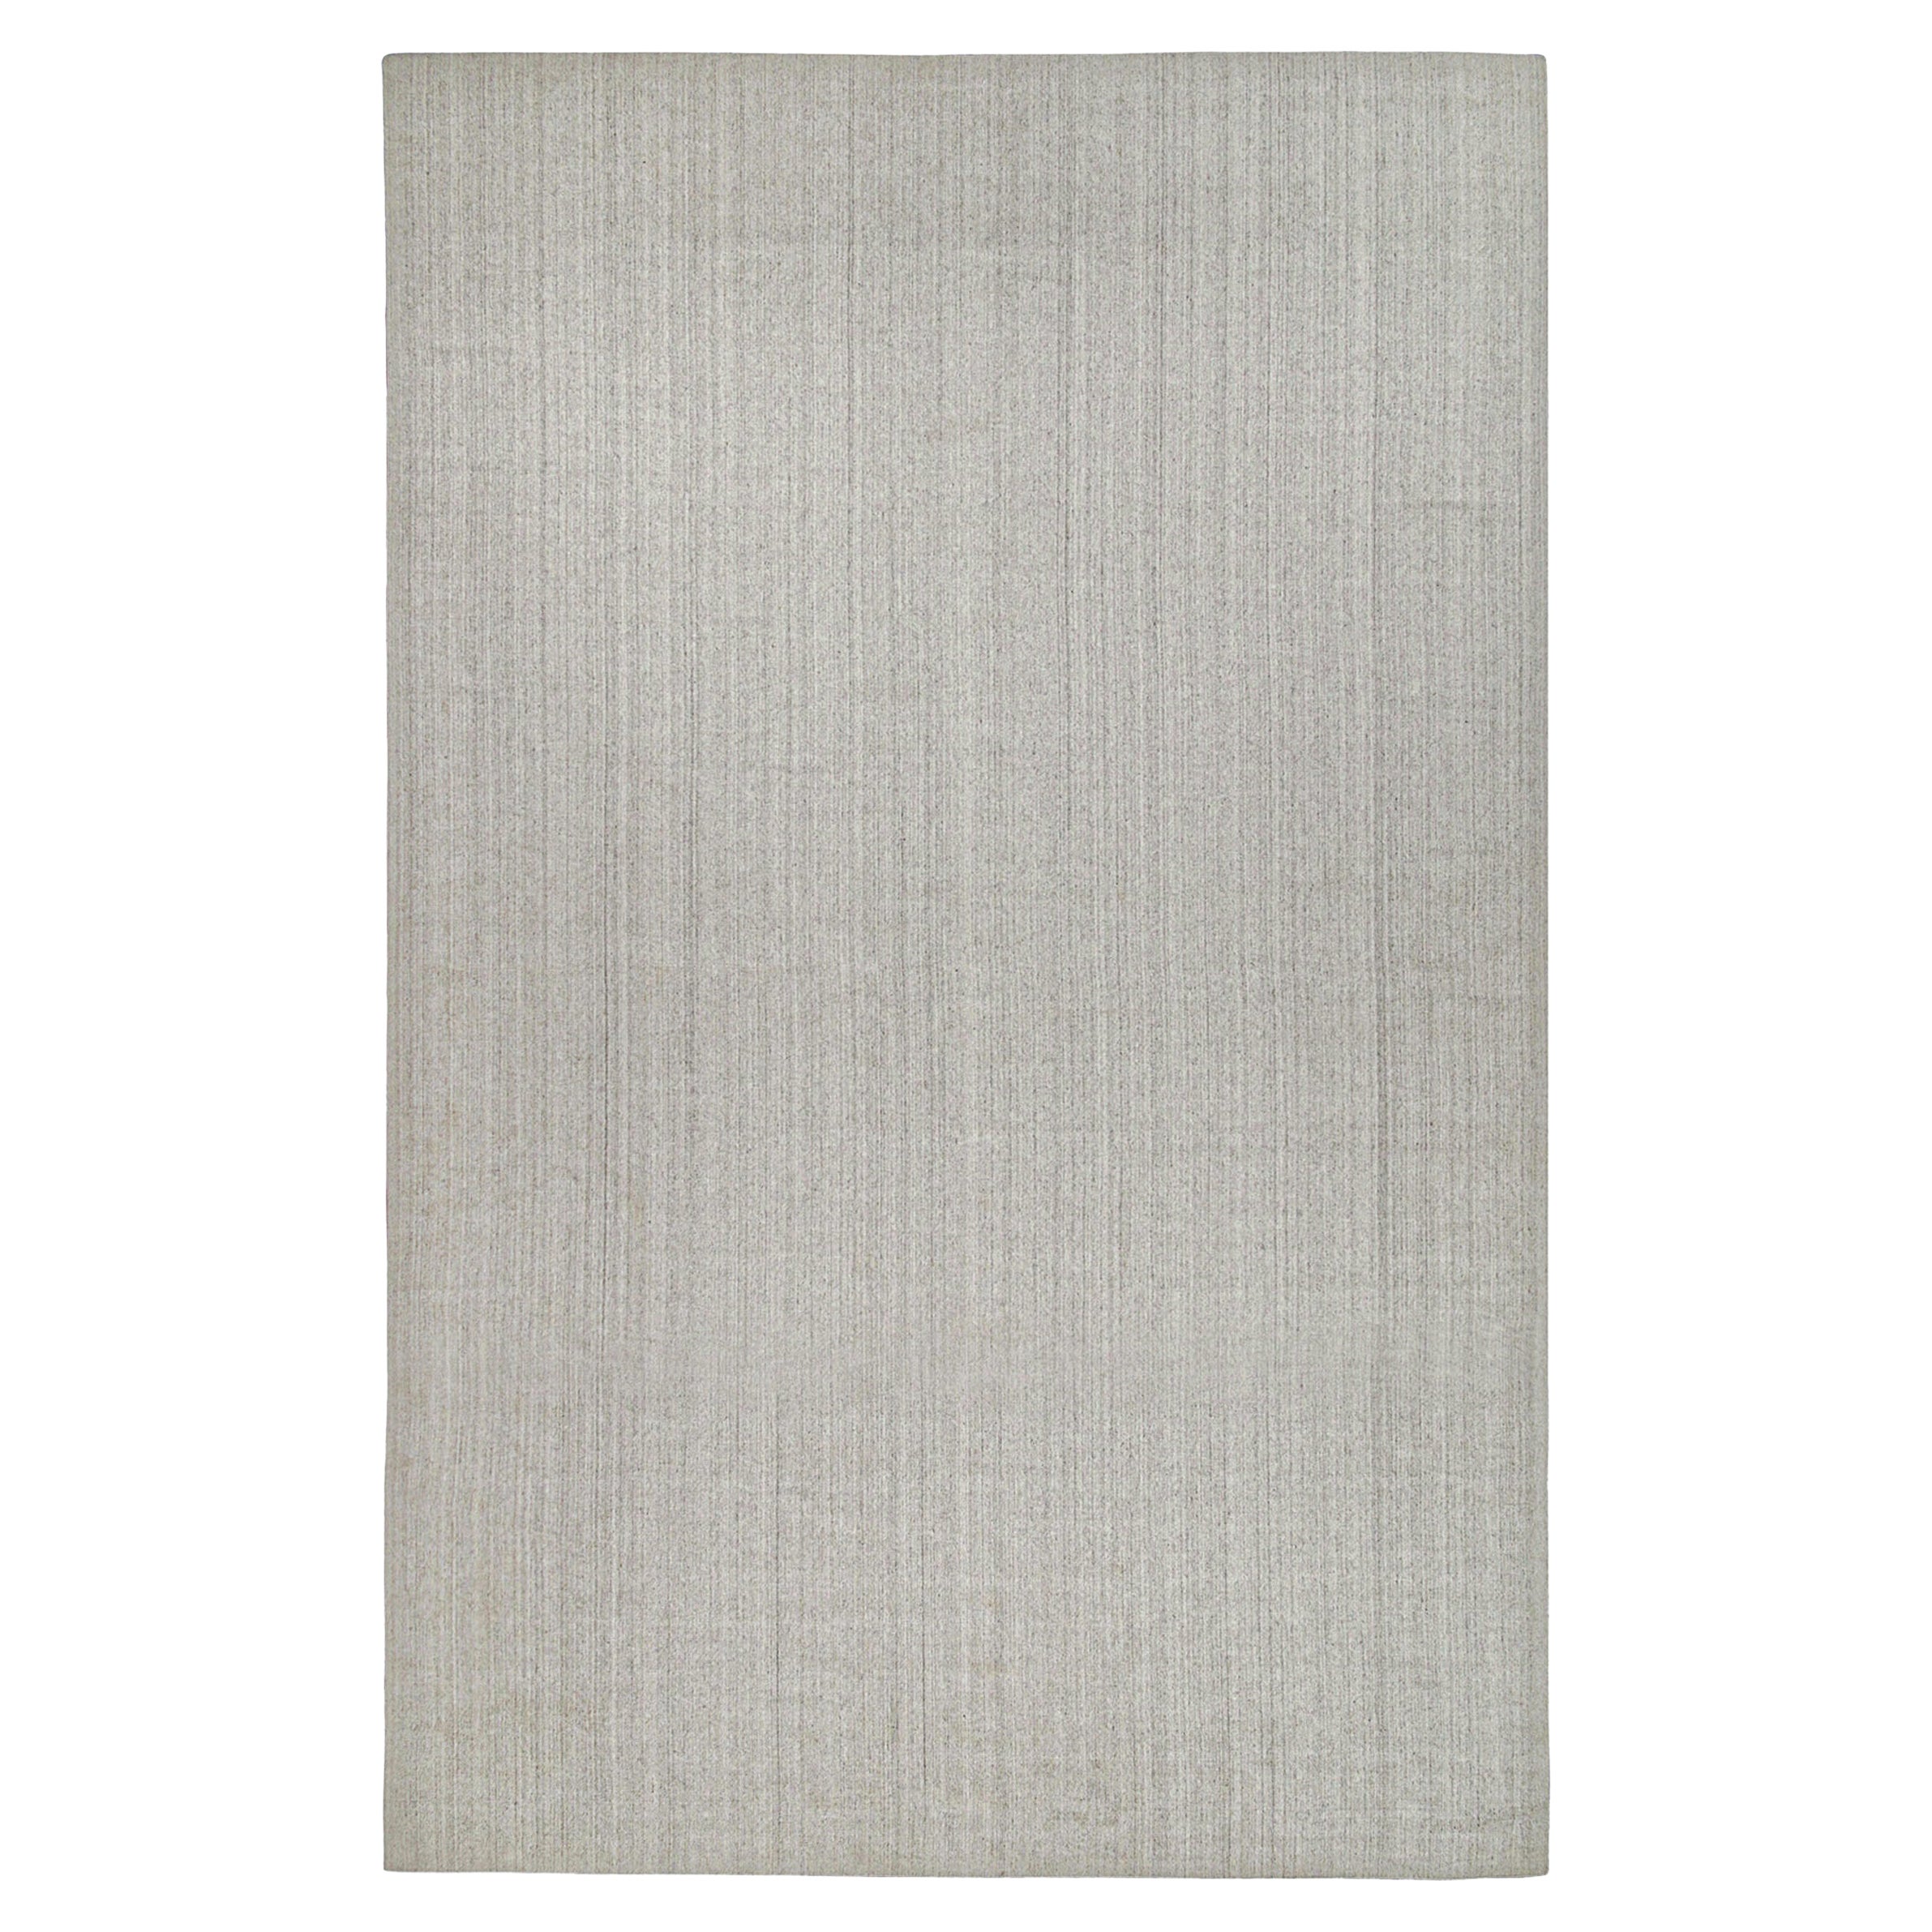 Ce tapis contemporain de 12x15 est une grande nouveauté de la collection Texture of Color de Rug & Kilim. Noué à la main en soie d'art et en coton. 

Les connaisseurs noteront que cette pièce fait partie de notre nouvelle ligne Light on Loom, qui